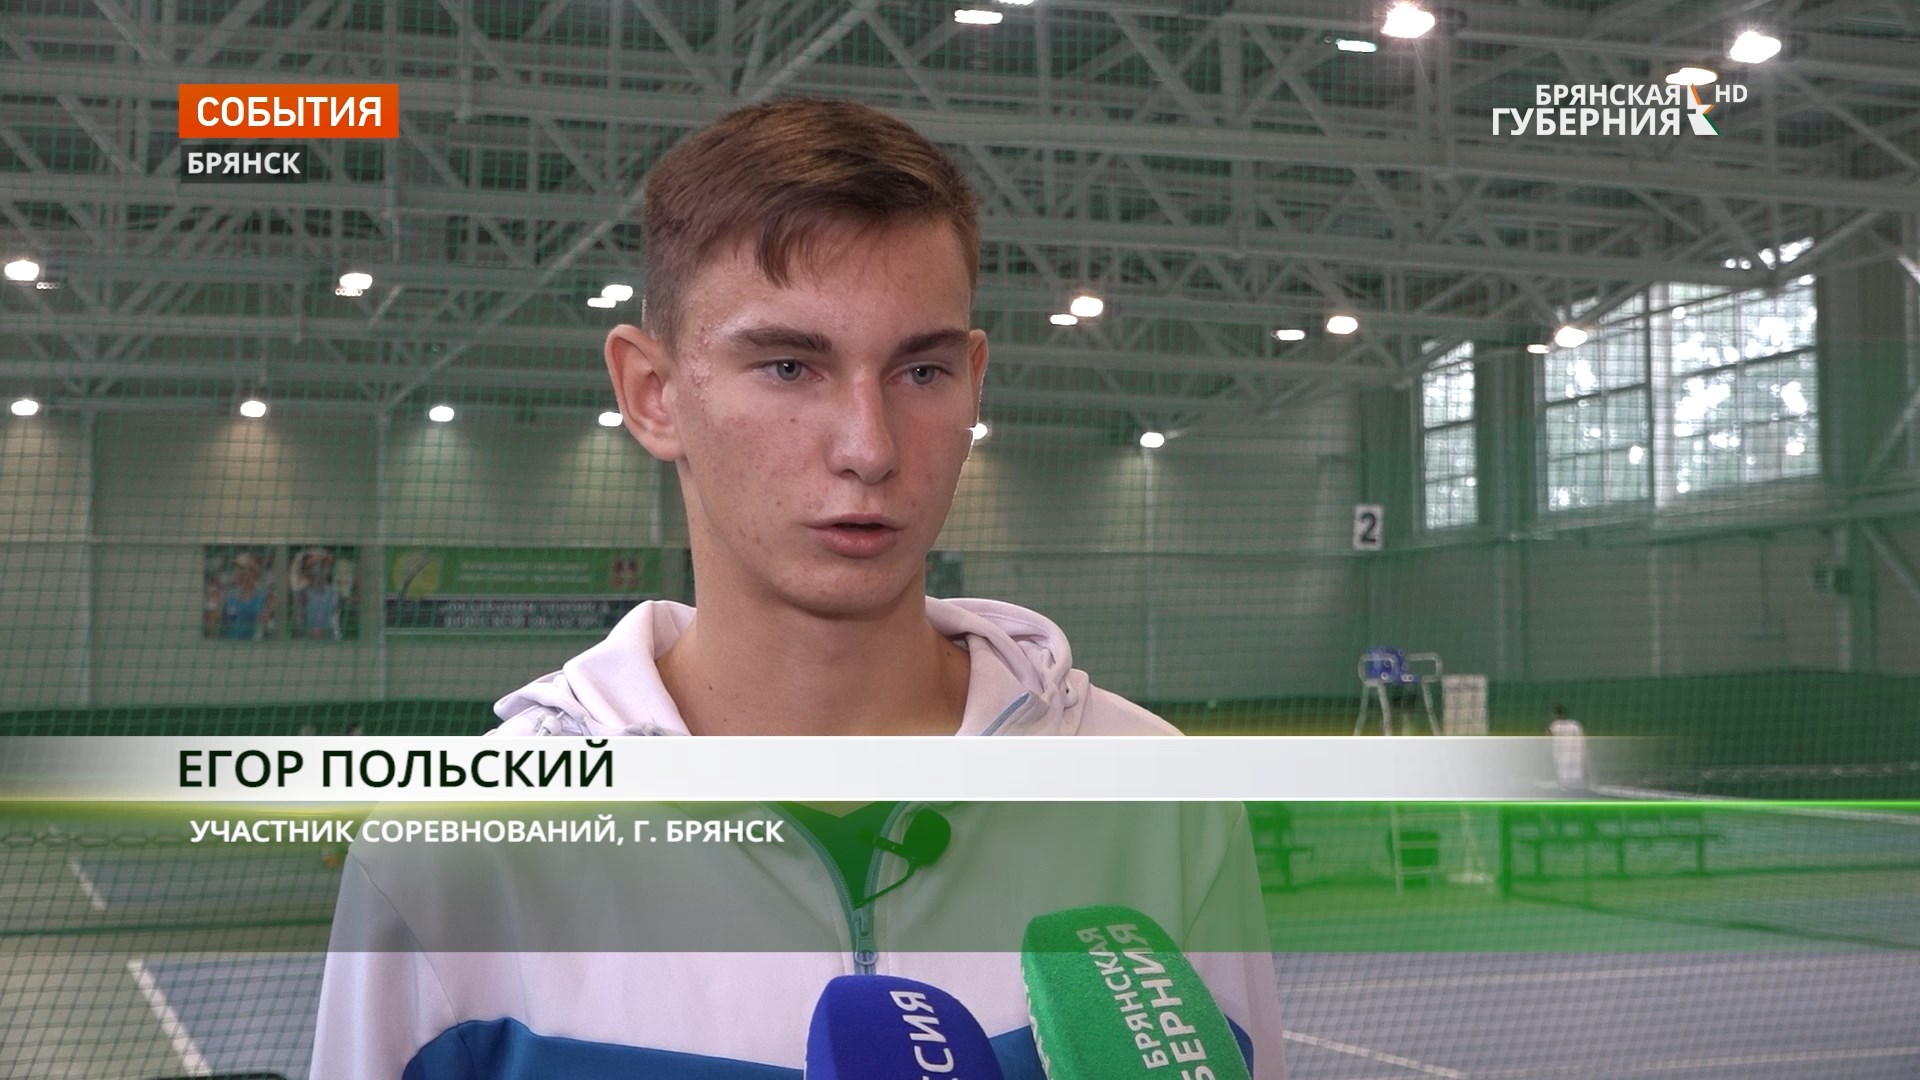 Команда Брянска стала победителем первого турнира «Славянское братство» по теннису